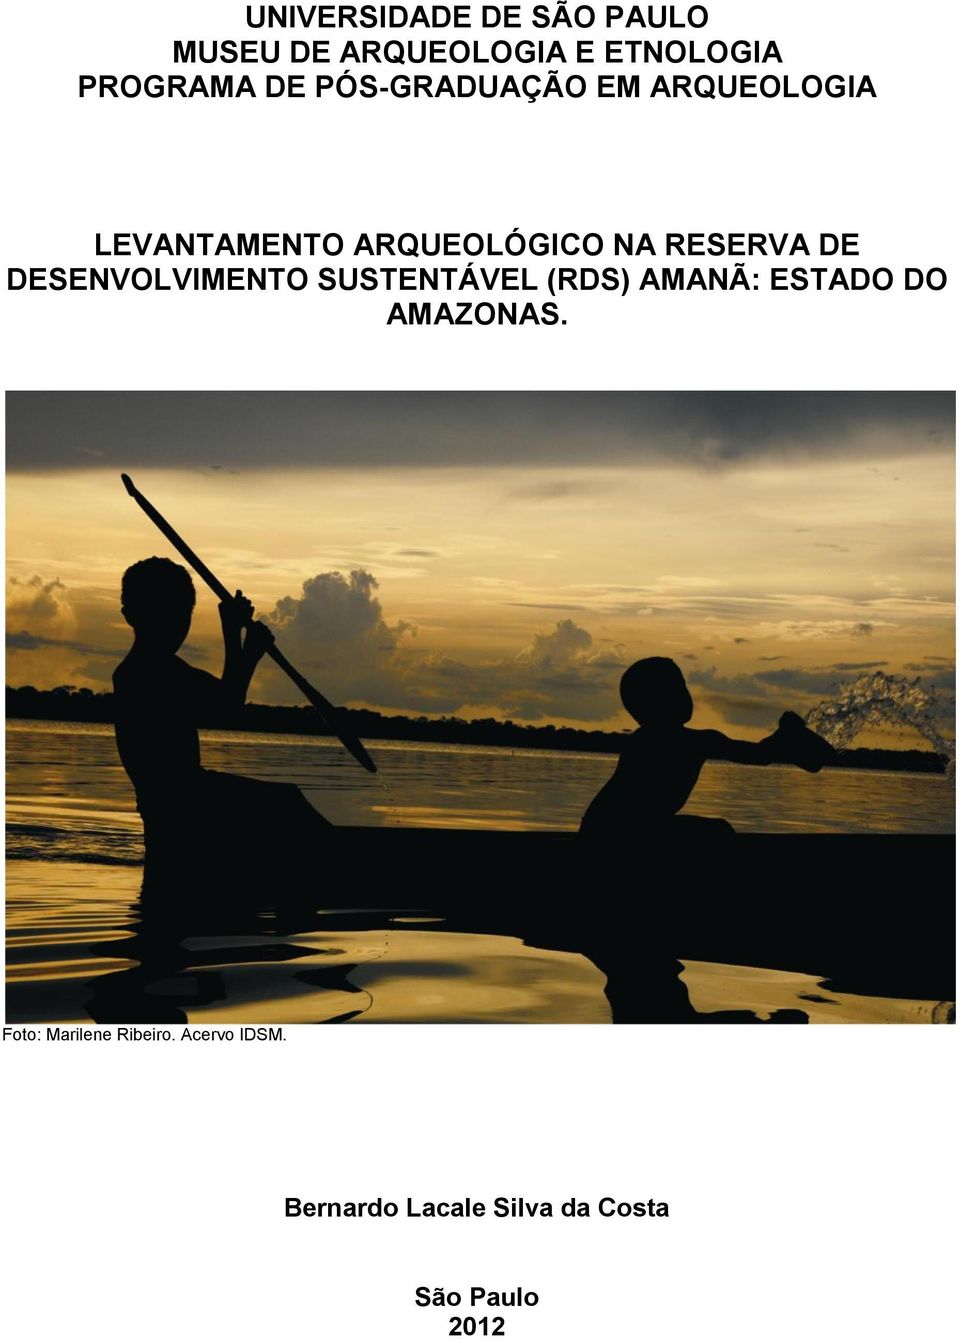 DESENVOLVIMENTO SUSTENTÁVEL (RDS) AMANÃ: ESTADO DO AMAZONAS.